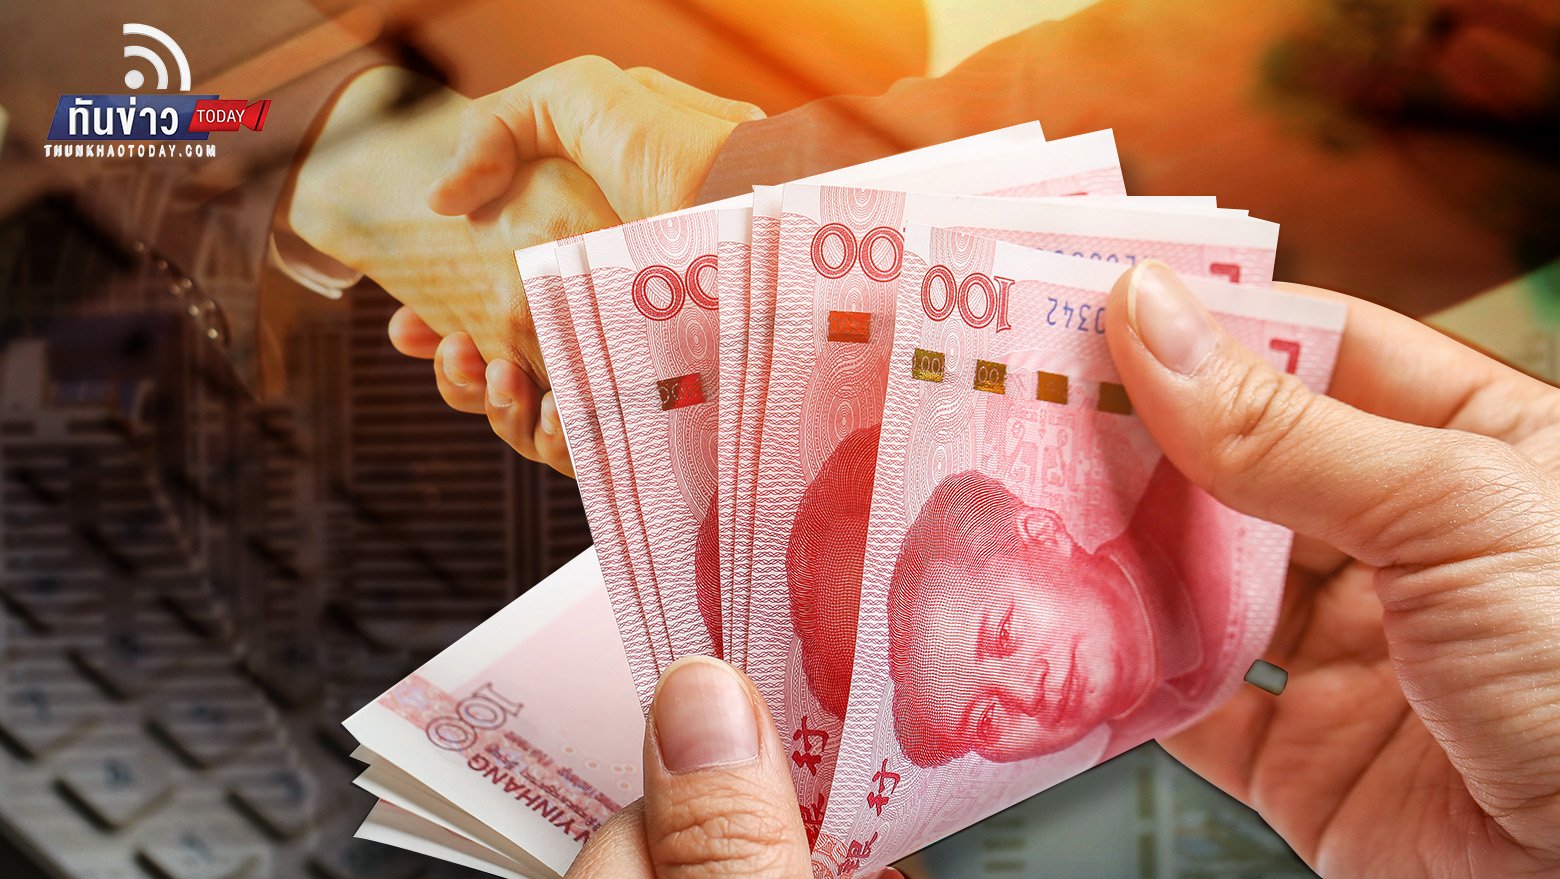 “หยวน” สกุลเงินหลักค้าขายกับอาเซียน  พาณิชย์เผยจีนเป็นคู่ค้ารายใหญ่ที่สุดมาเป็นเวลา 13 ปีติดต่อกัน